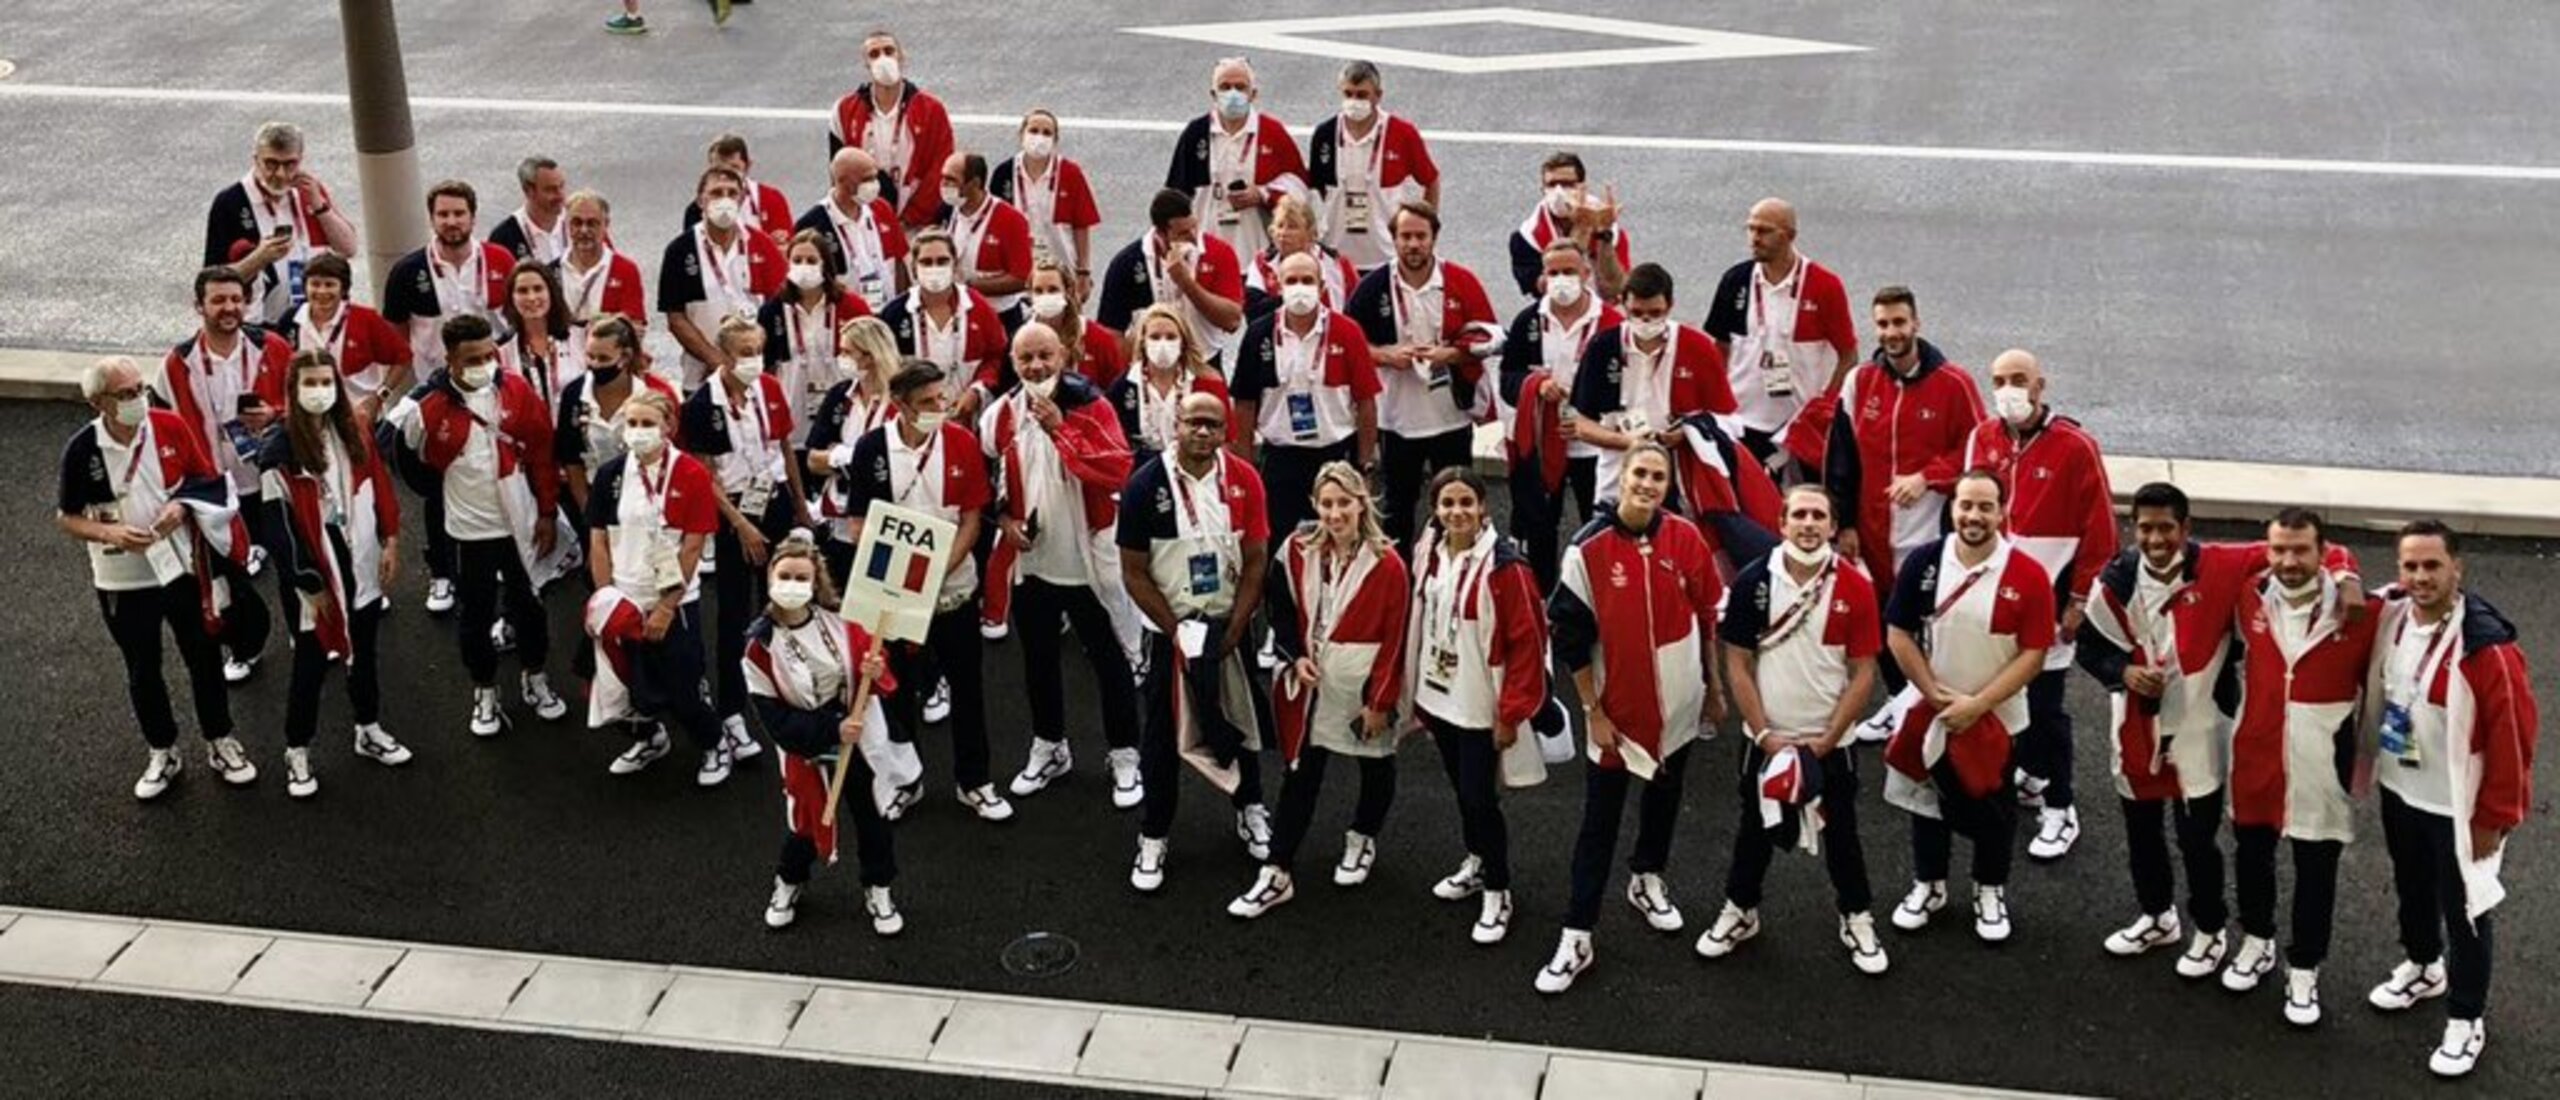 La France achève ces Jeux olympiques avec 33 médailles, dont 18 remportées par des femmes.